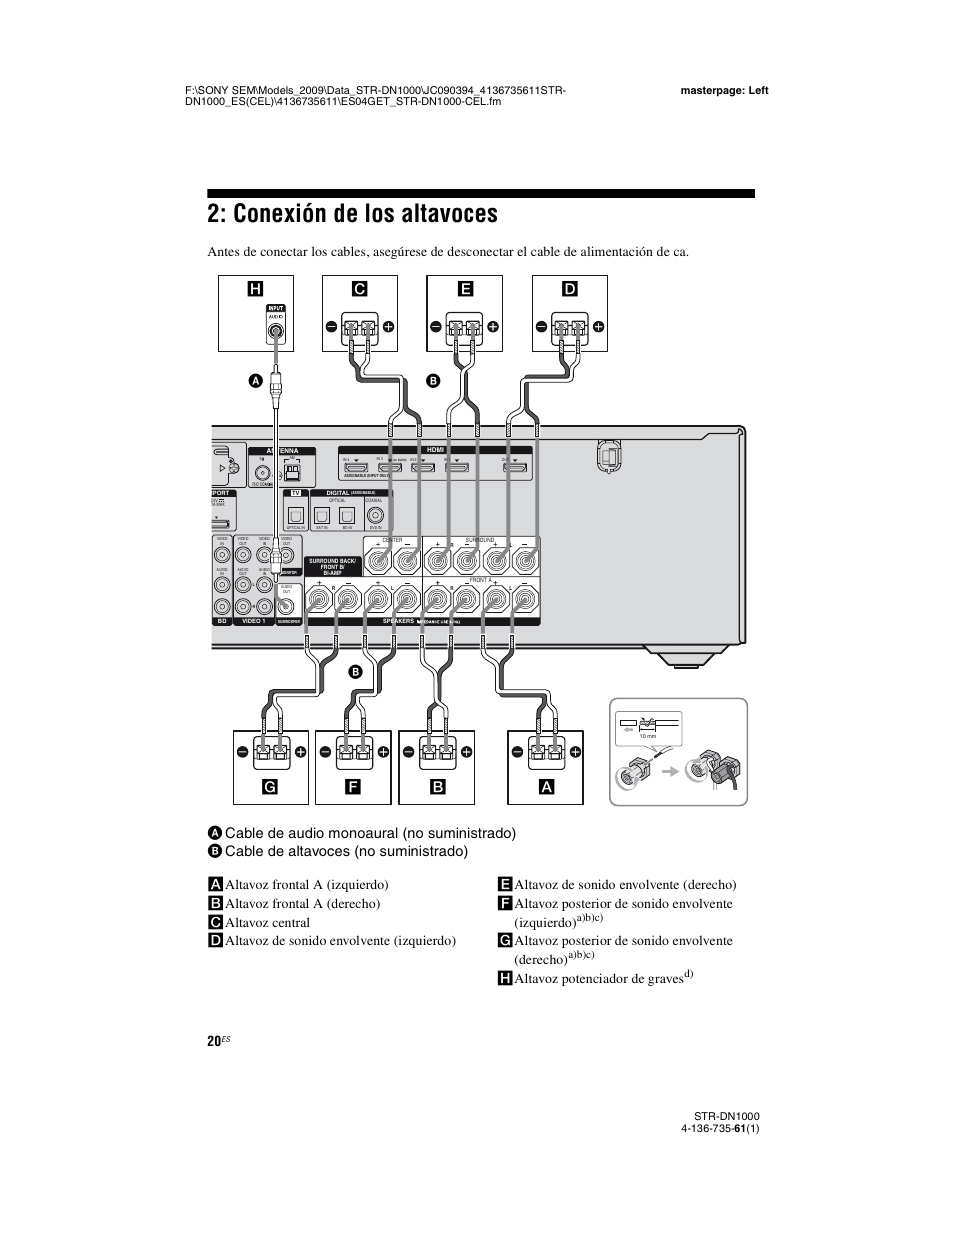 Conexión de los altavoces, Galtavoz posterior de sonido envolvente (derecho), Haltavoz potenciador de graves | A)b)c) | Sony STR-DN1000 Manual del usuario | Página 20 / 144